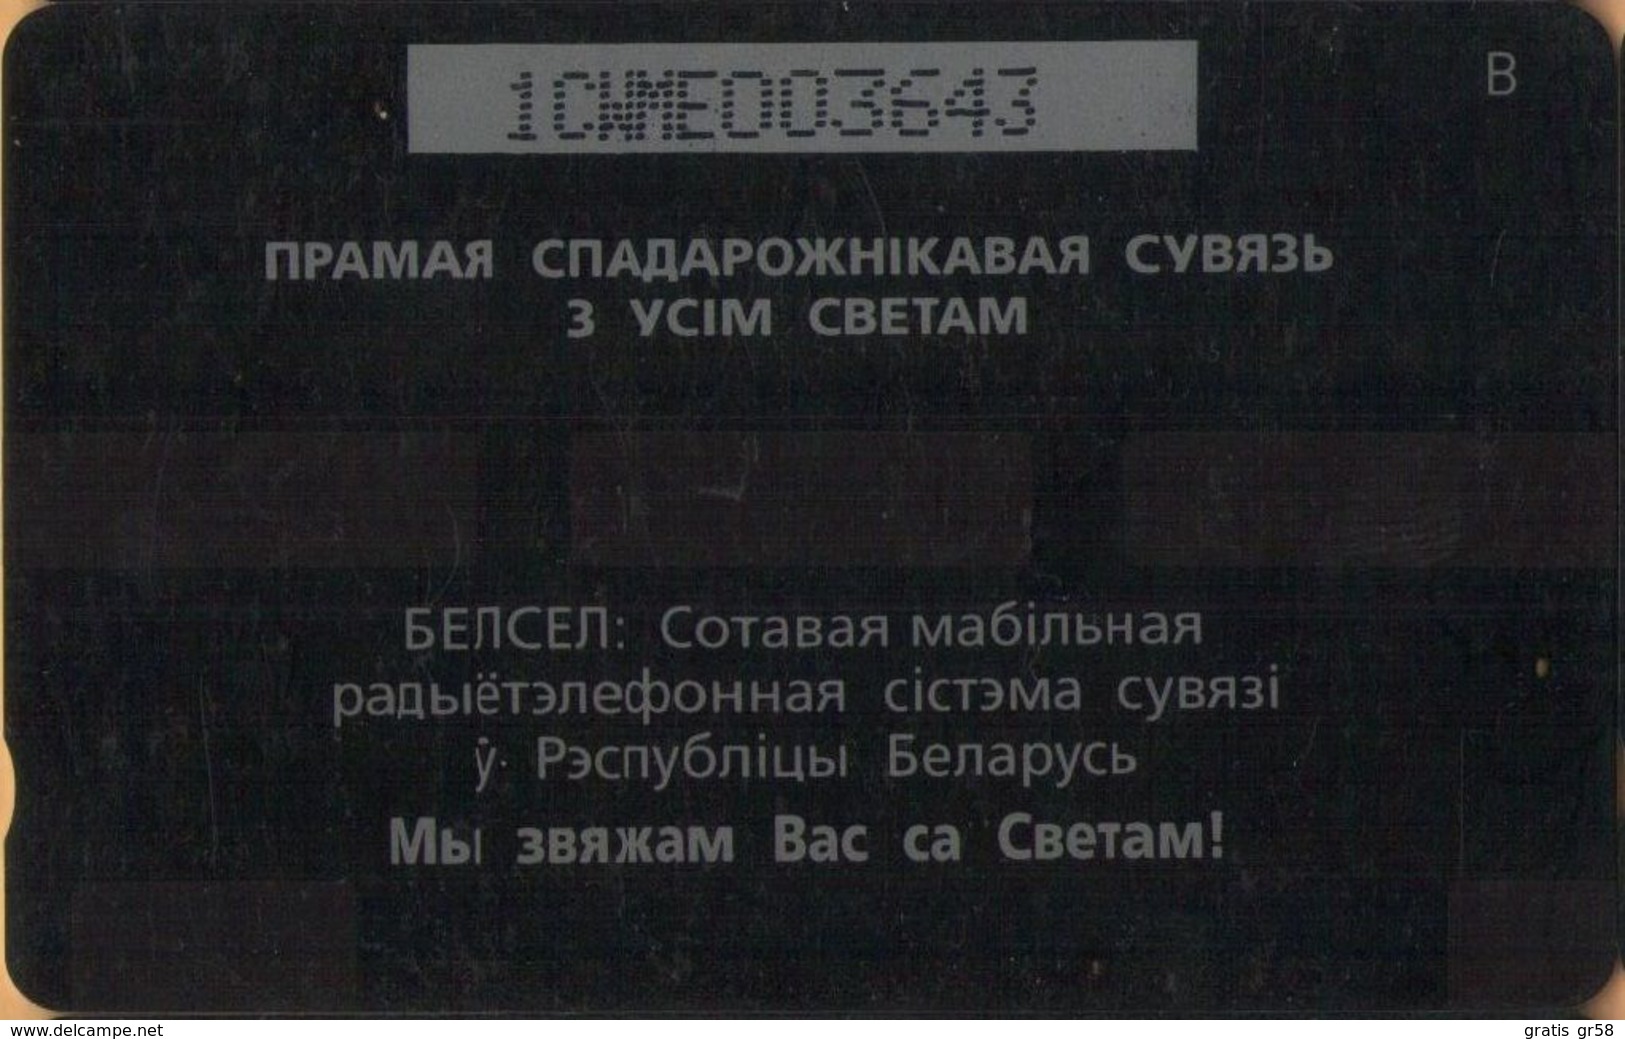 Belarus - GPT, 1CWME, Minsk. Church Of St.Simon & St.Helen (Belarussian Text), Chapels, 5,000ex, 20U, 1/95, Used - Belarus